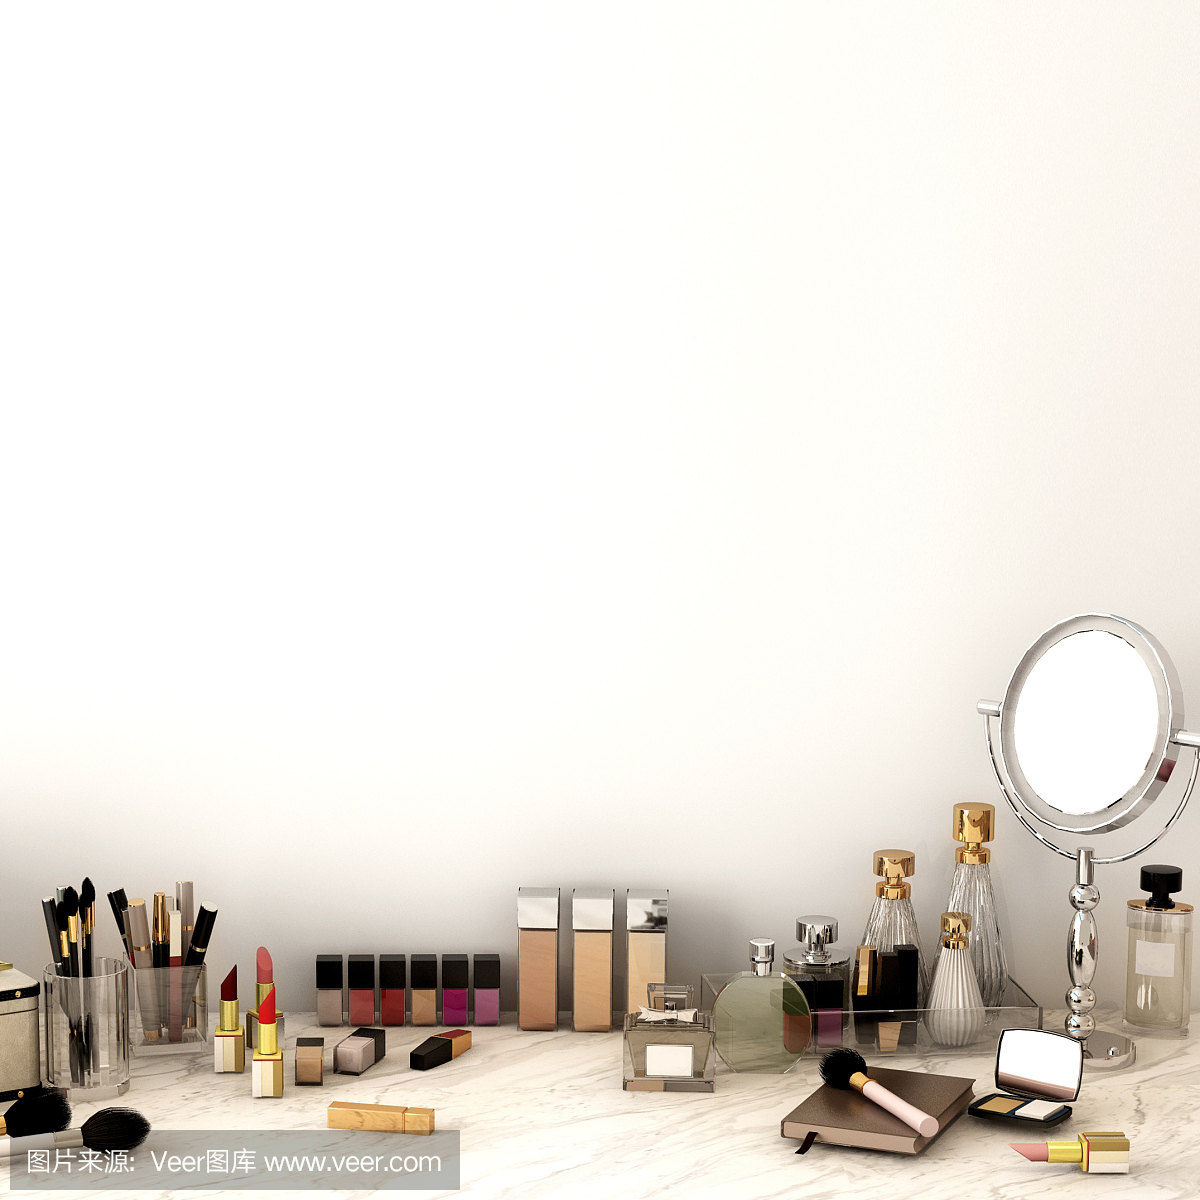 俯视图的配件,美容化妆品的女人在大理石背景,工作空间,3d插图